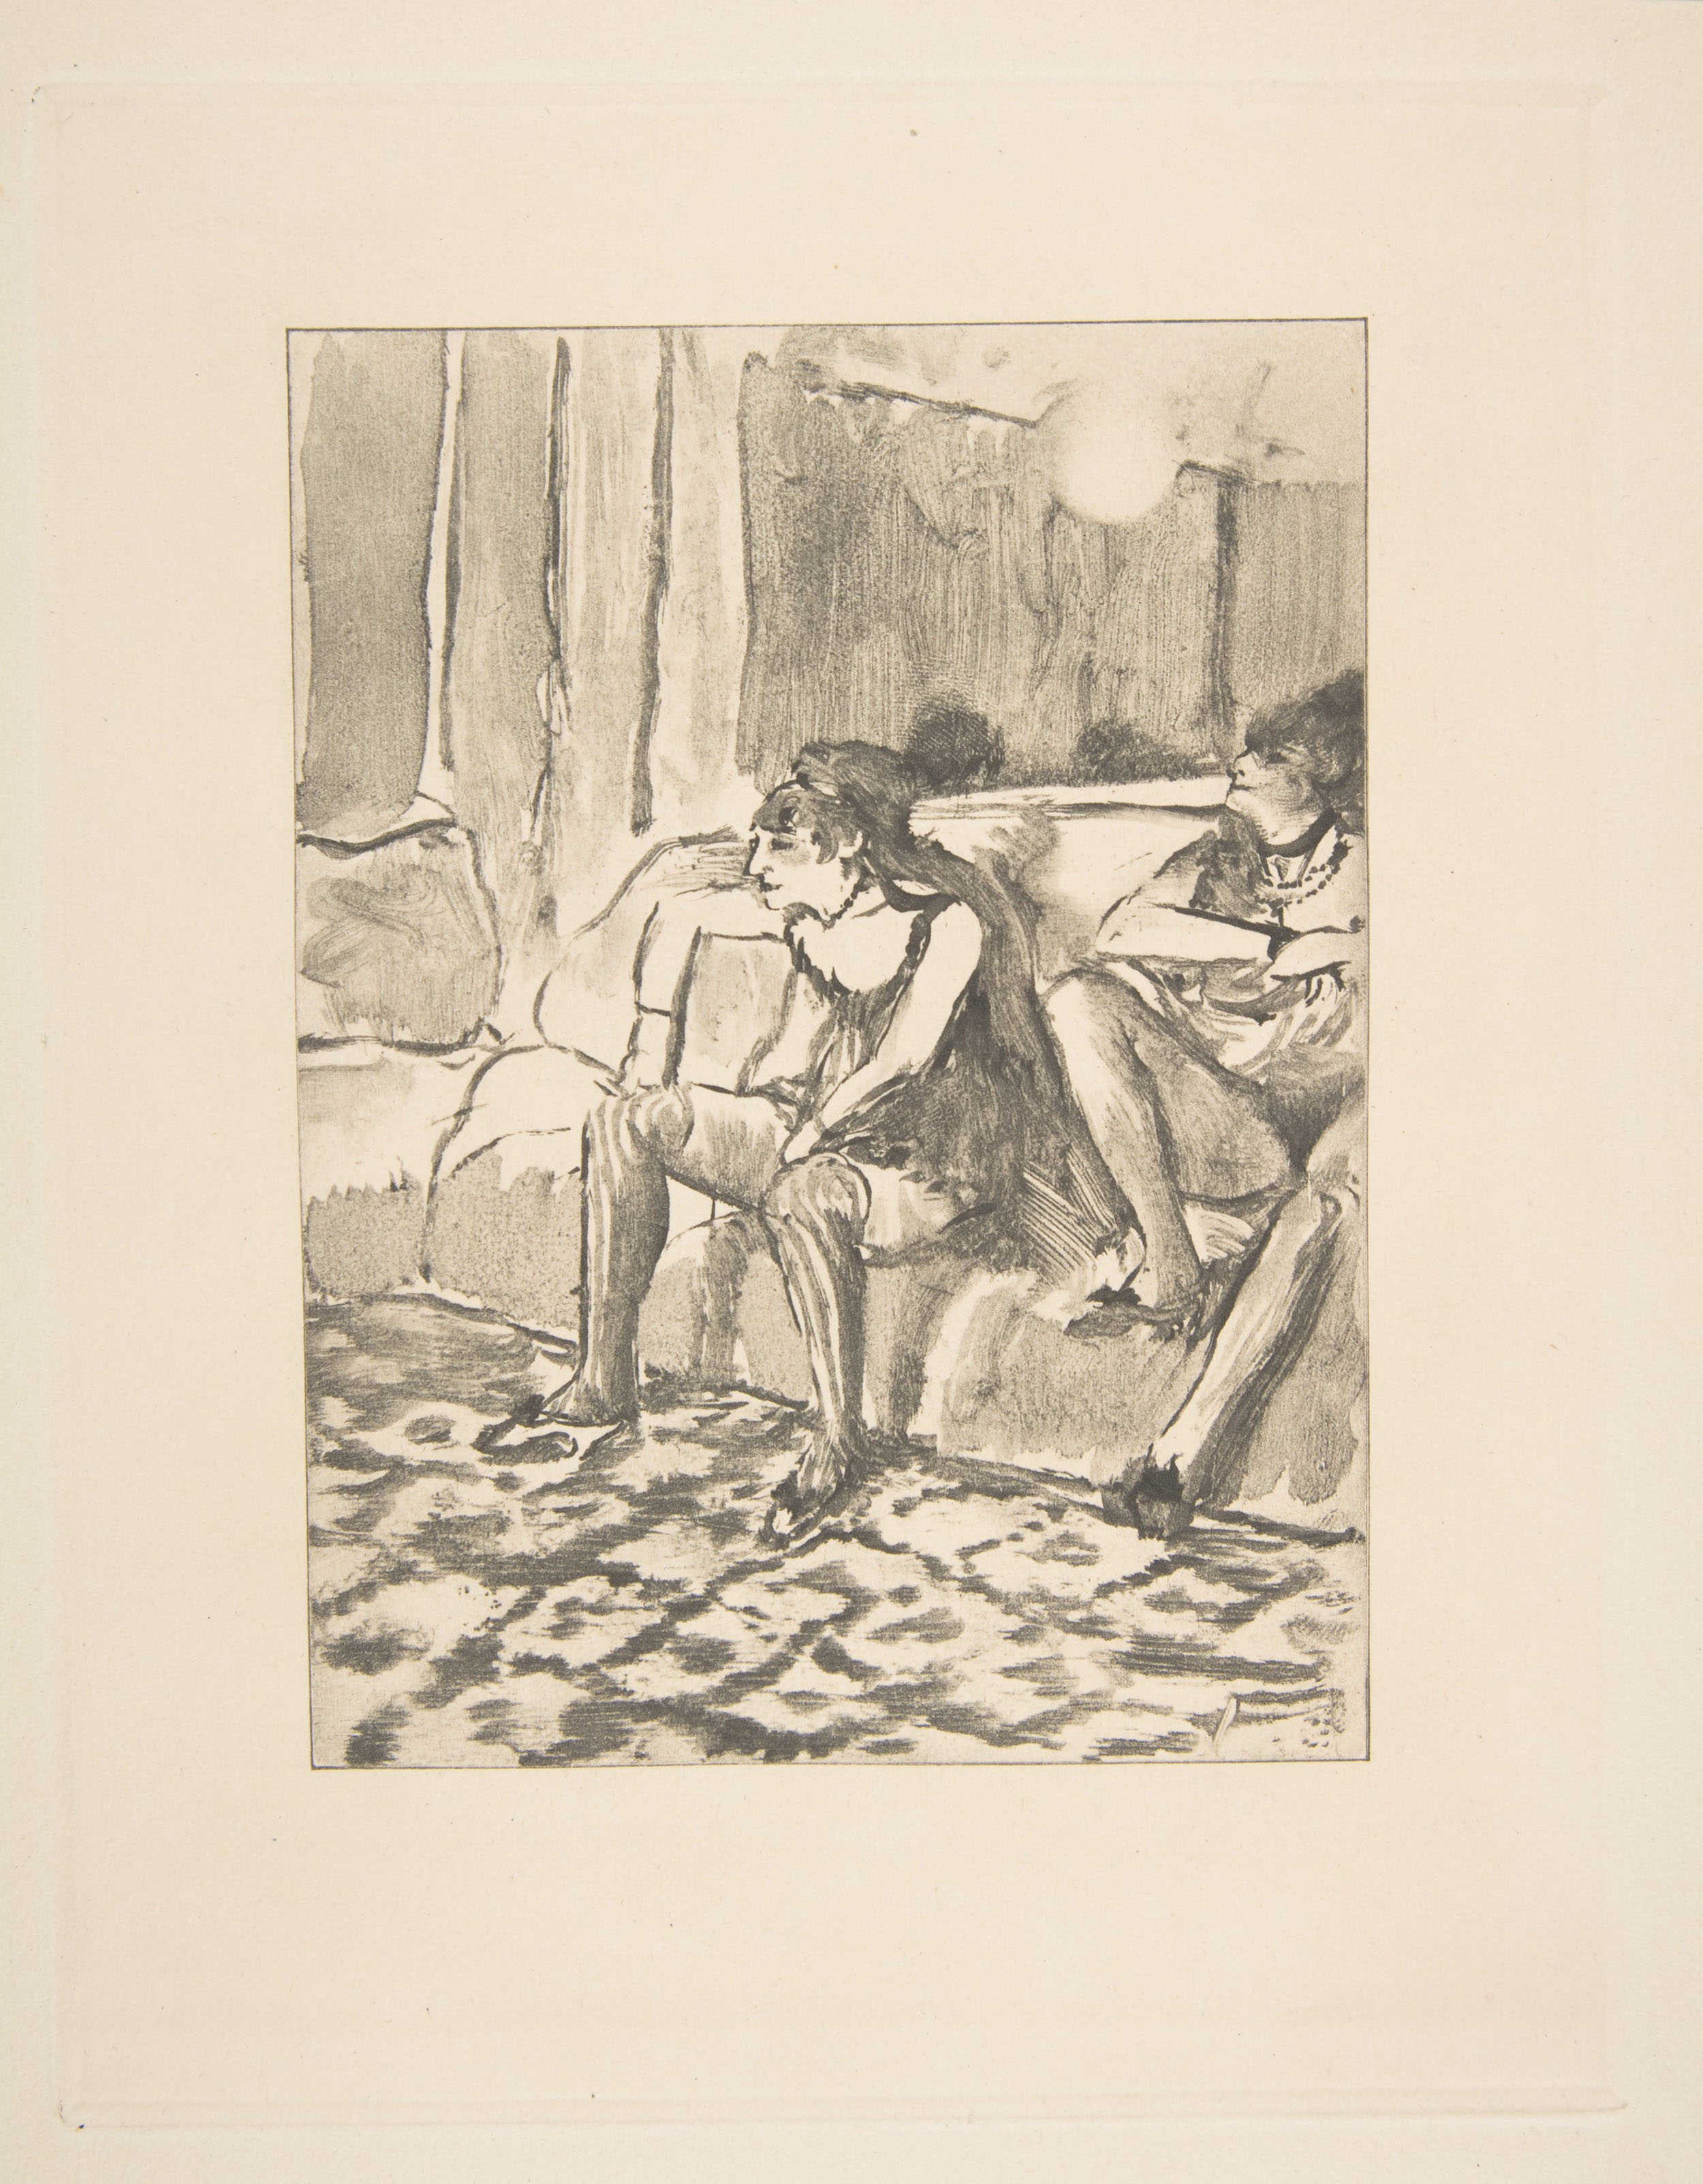 Эдгар Дега. "Две проститутки". Около 1878-1879.